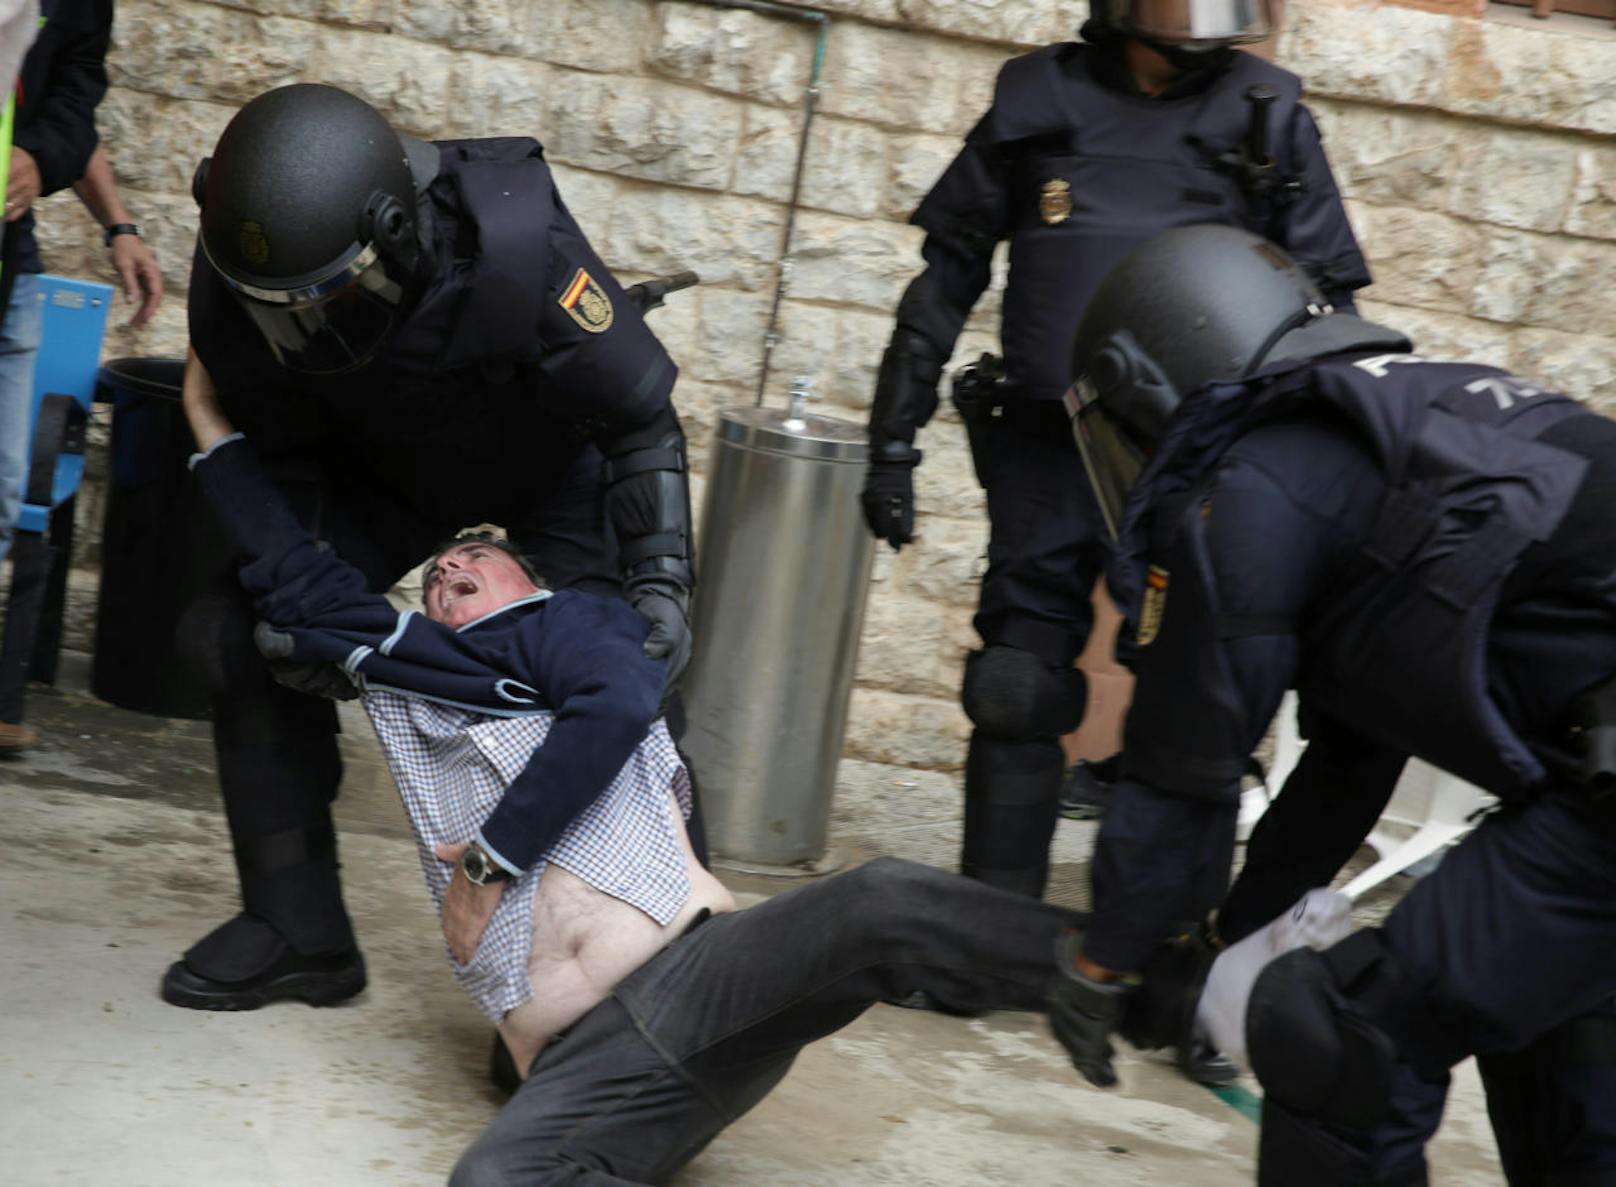 Die spanische Polizei wollte die Katalanen von der Stimmabgabe beim Referendum fernhalten, auch mit Gewalt. Bilder von blutüberströmten Verletzten zeigen die Polizeibrutalität.
